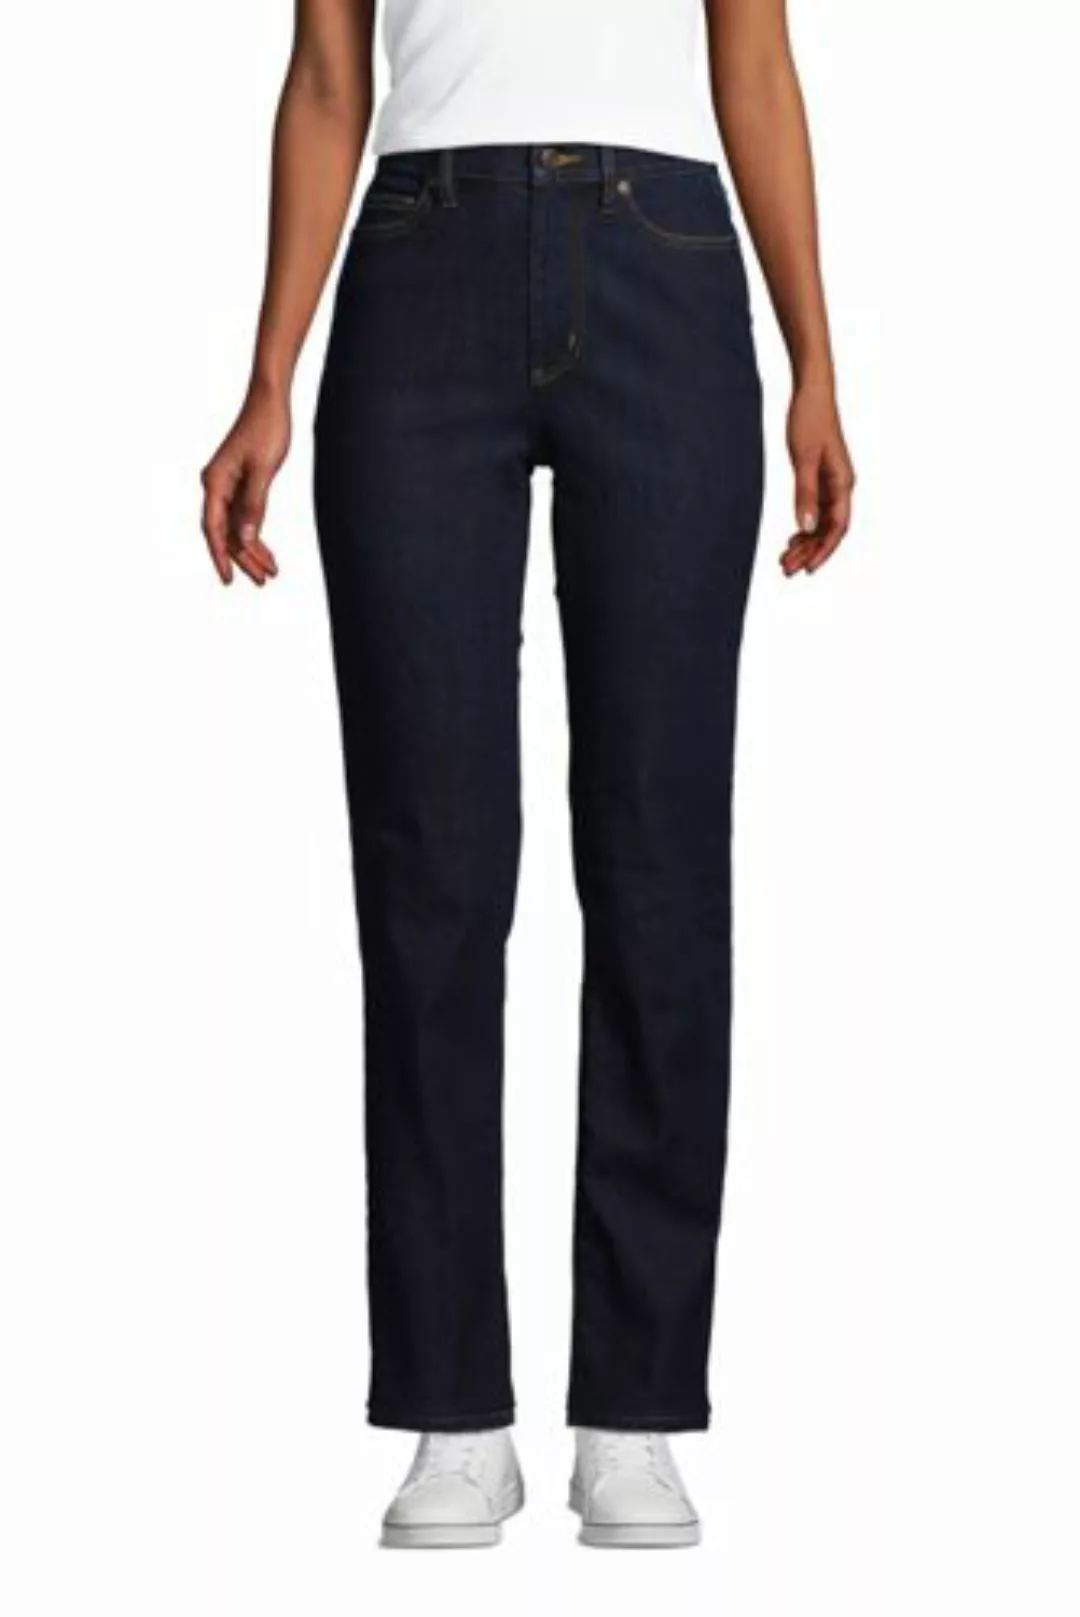 Straight Fit Öko Jeans High Waist, Damen, Größe: 36 32 Normal, Blau, Elasth günstig online kaufen